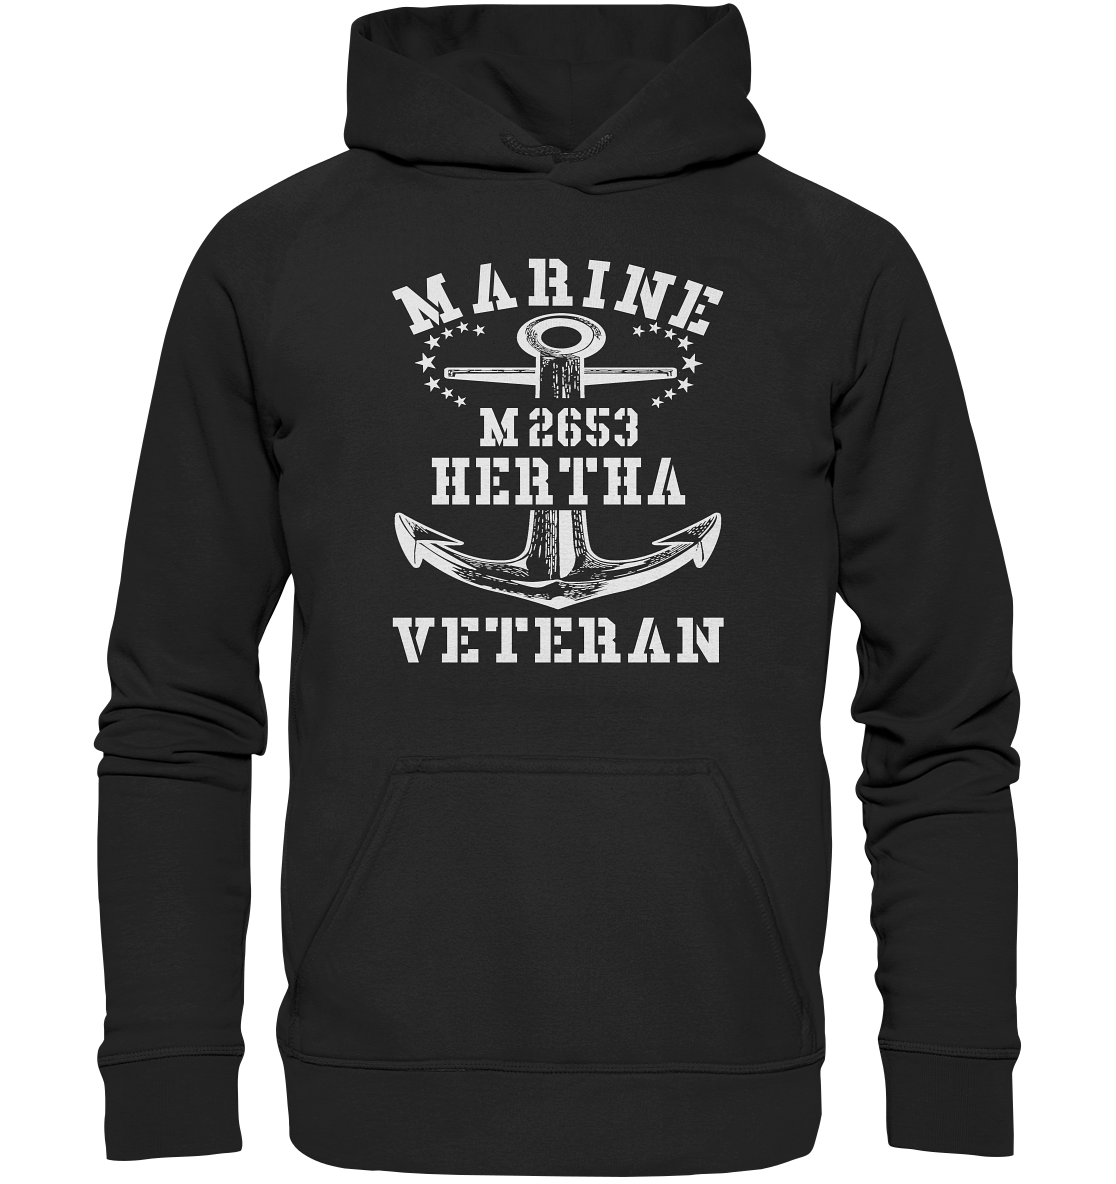 BiMi M2653 H.E.R.T.H.A. Marine Veteran - Basic Unisex Hoodie XL